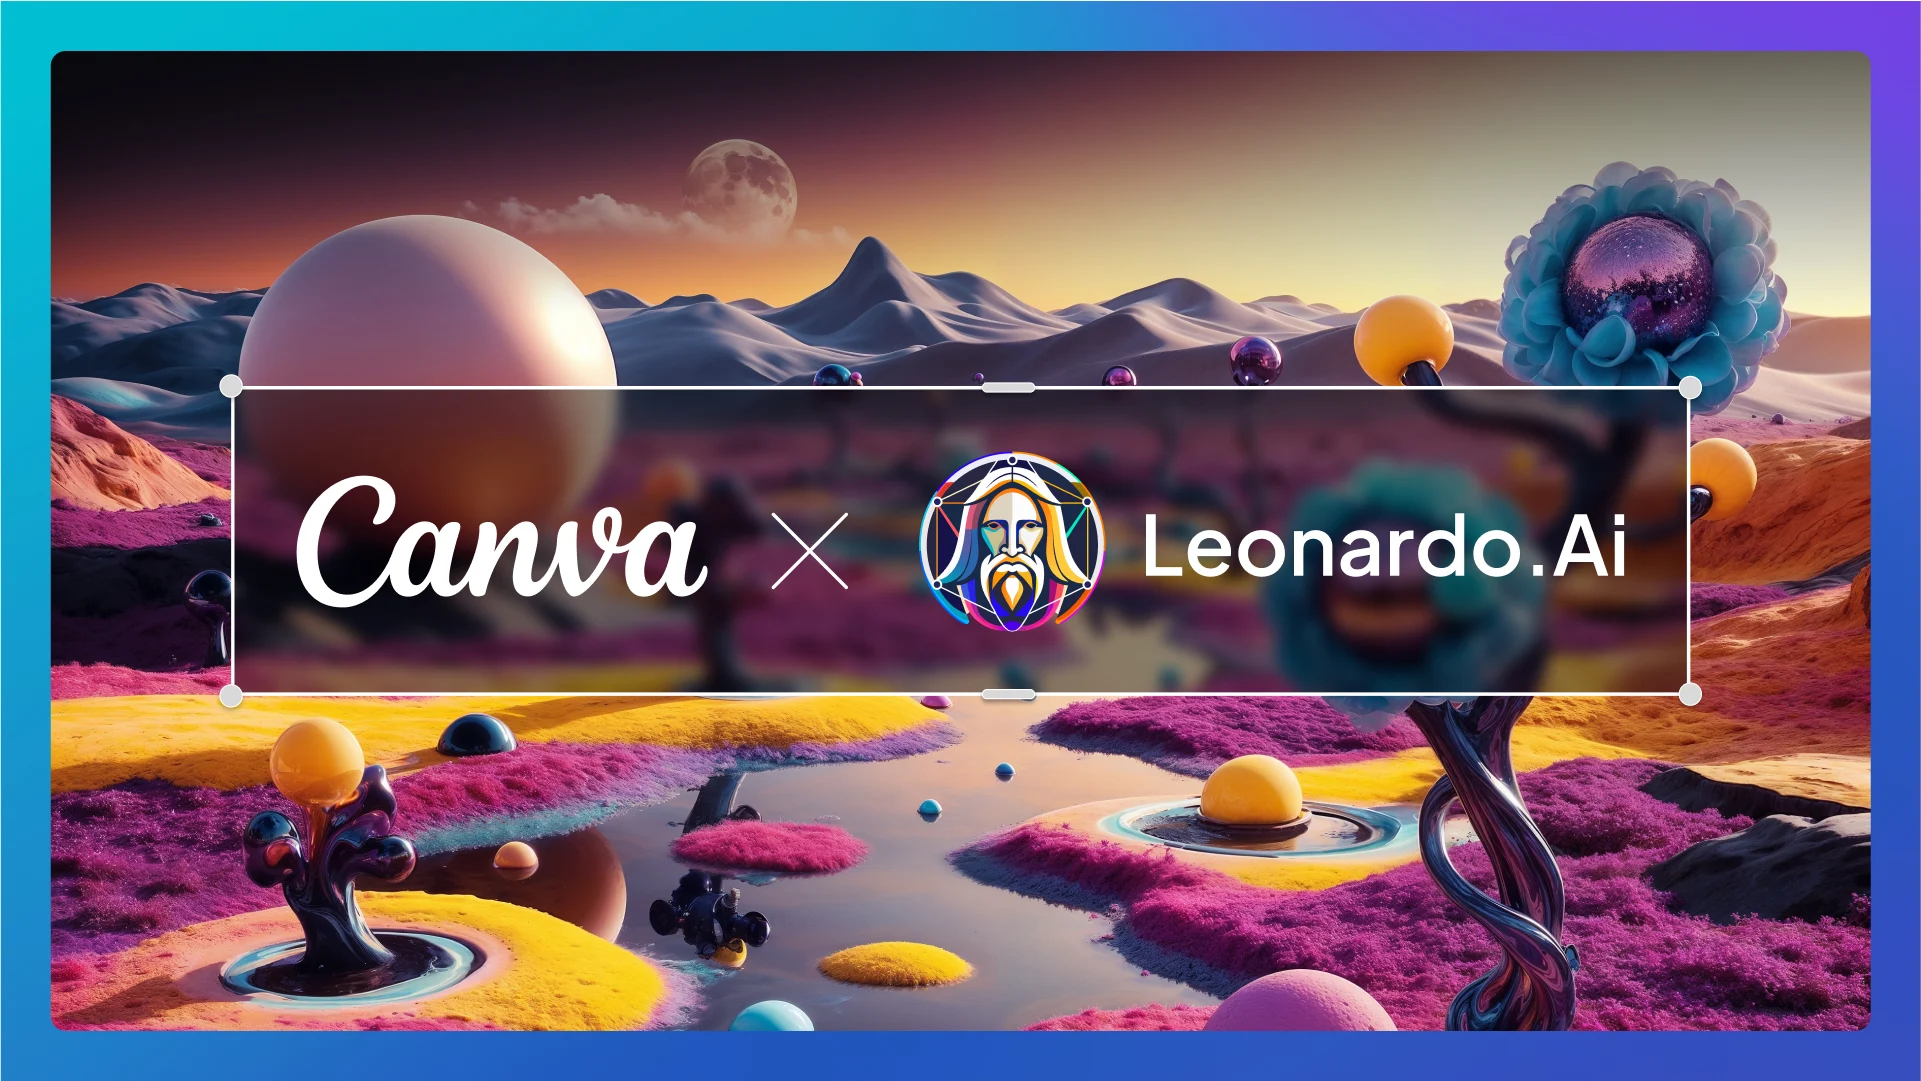 Platforma Canva przejęła startup Leonardo.ai, aby wzmocnić swój rozwój w dziedzinie sztucznej inteligencji generatywnej.